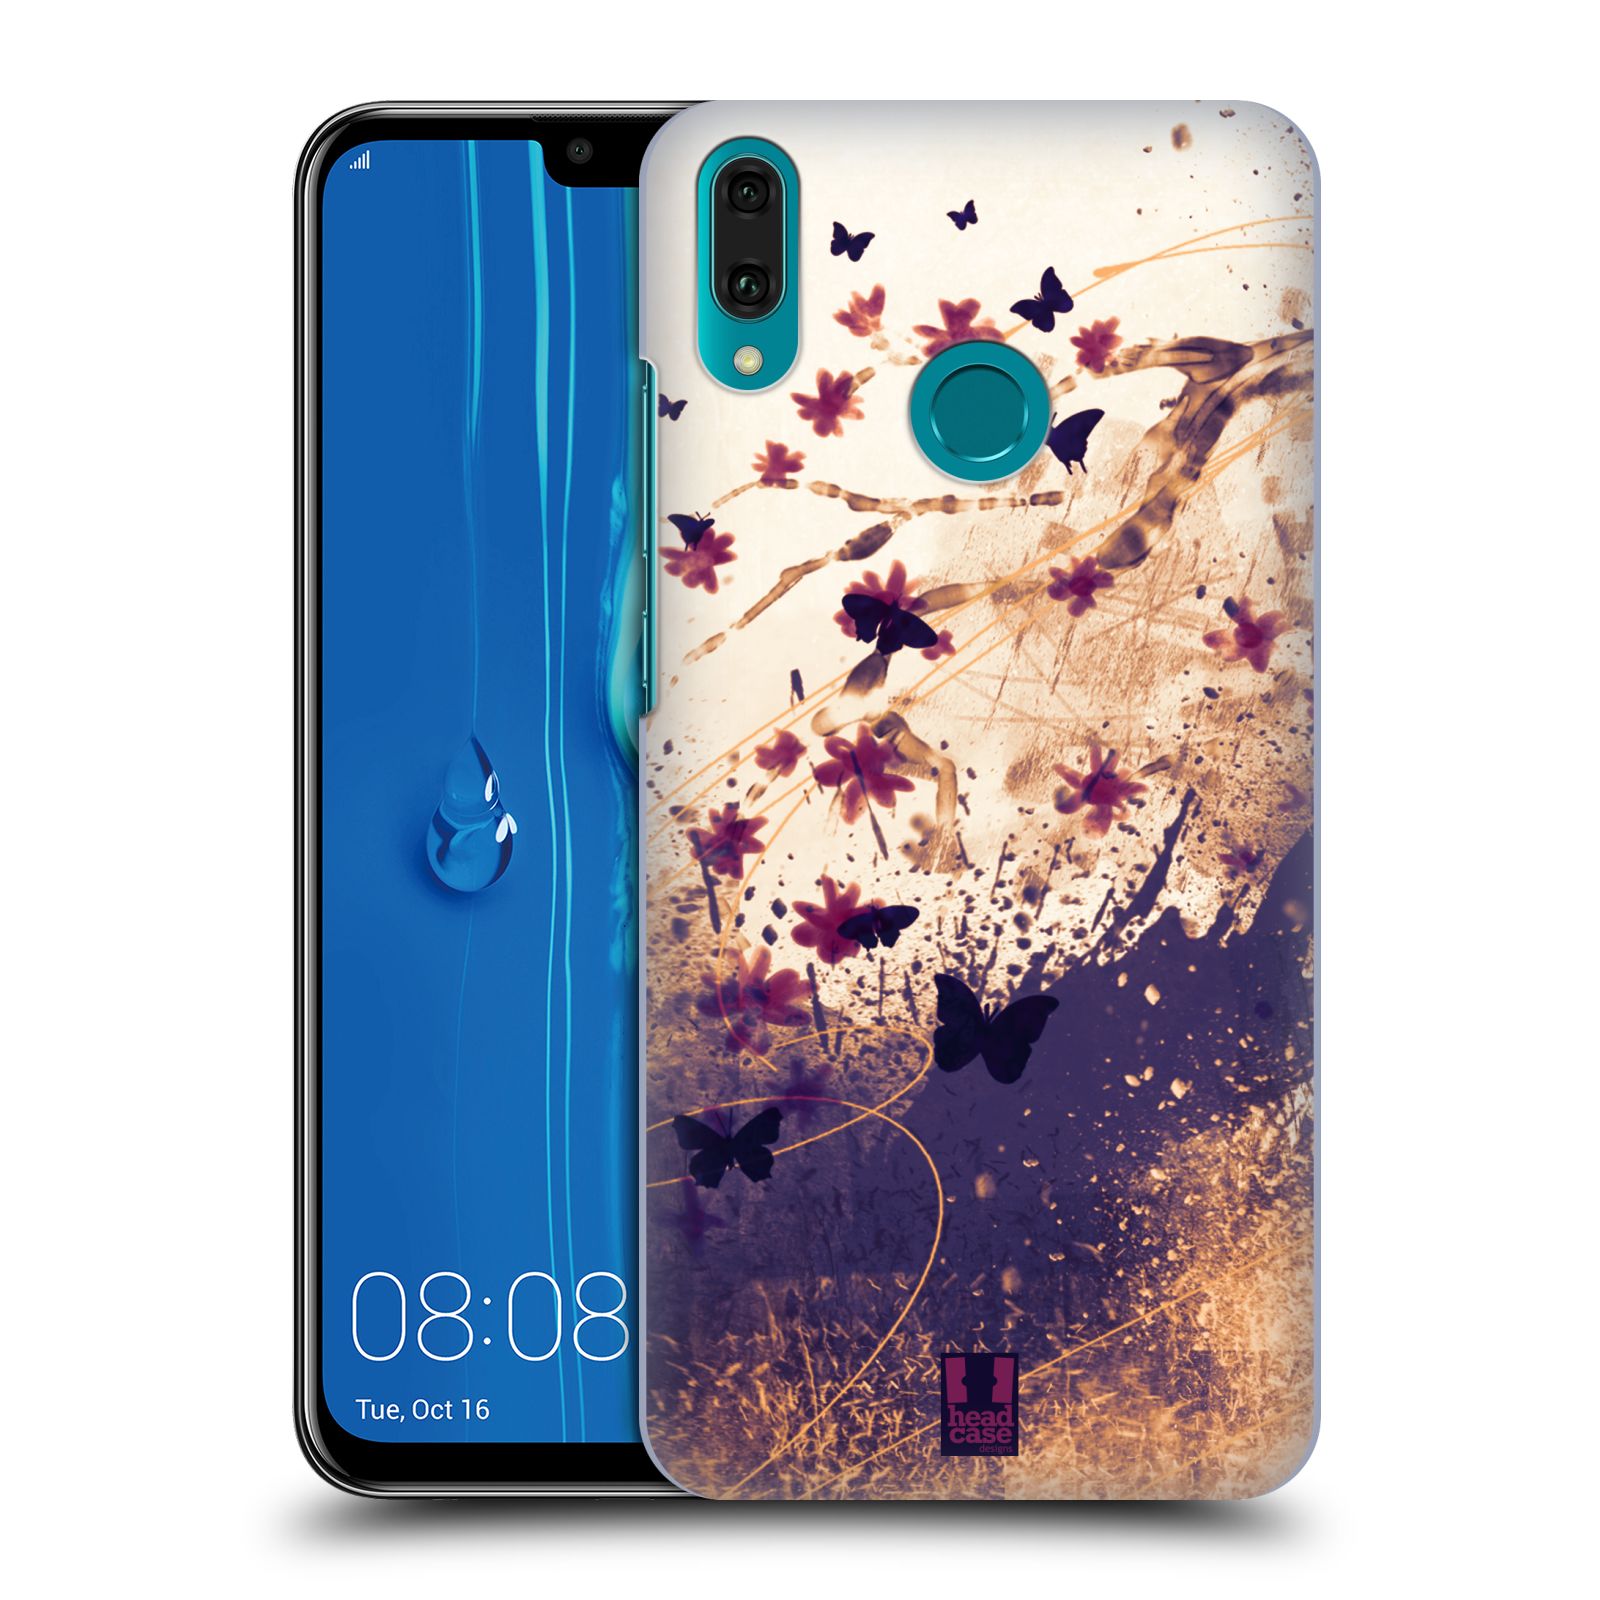 Pouzdro na mobil Huawei Y9 2019 - HEAD CASE - vzor Kreslené barevné květiny KVĚTY A MOTÝLCI